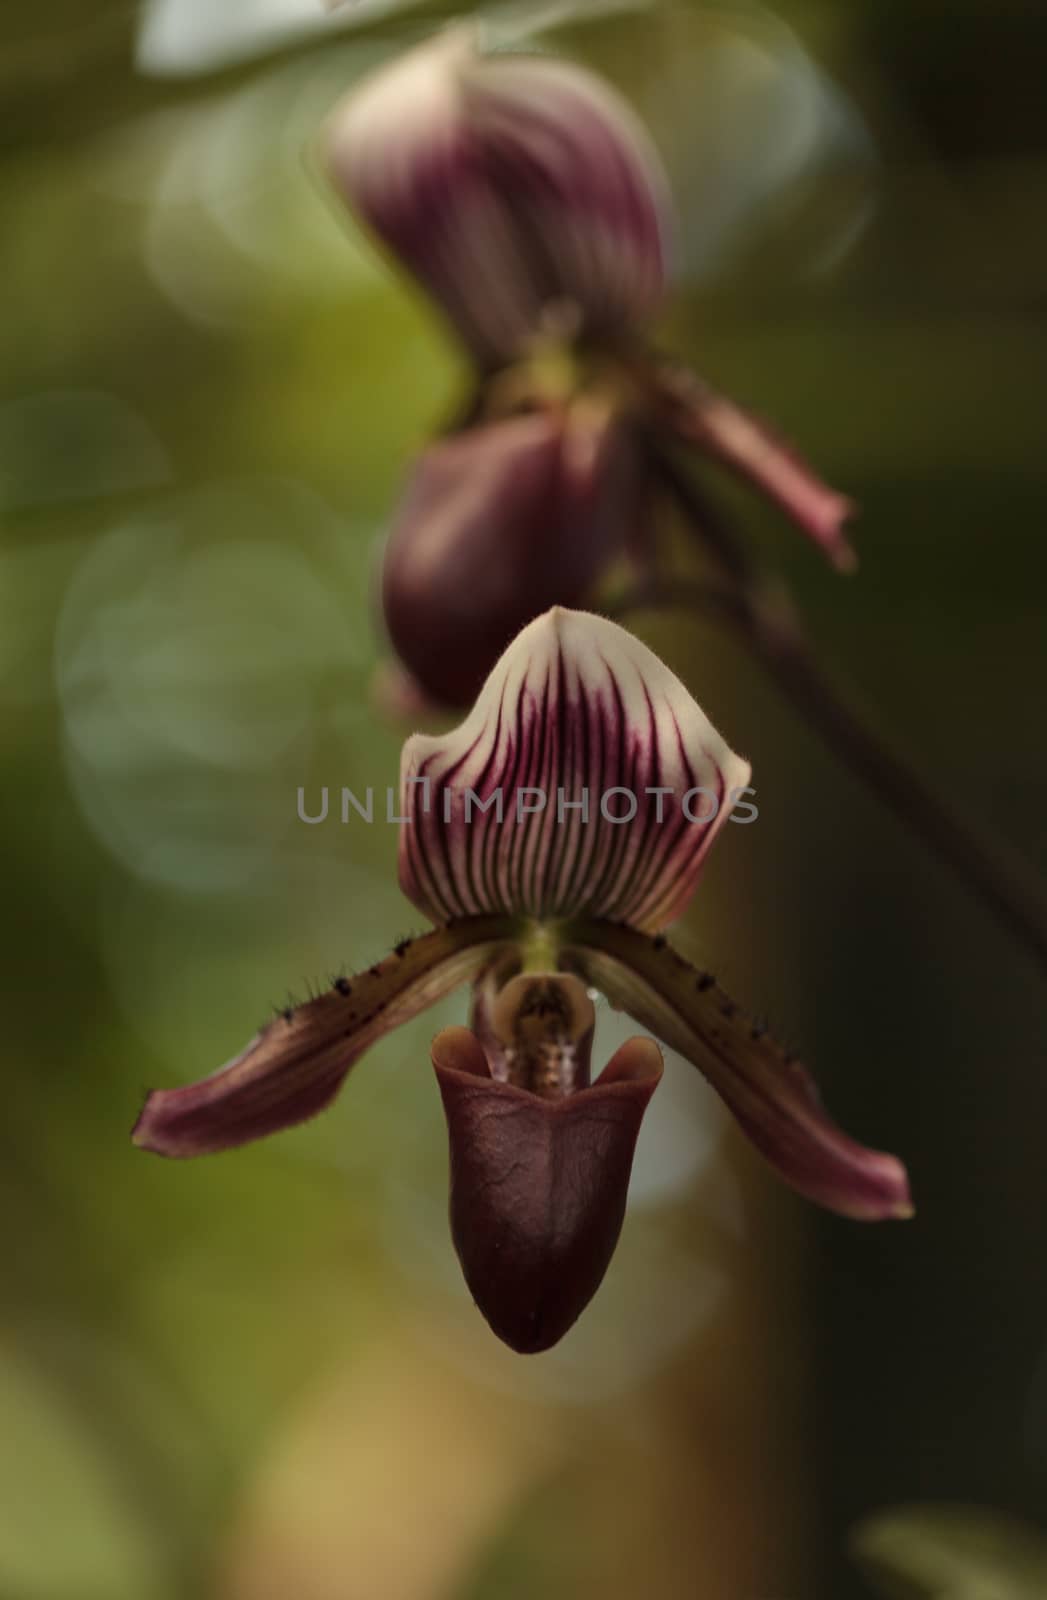 Lady Slipper Orchid flower by steffstarr